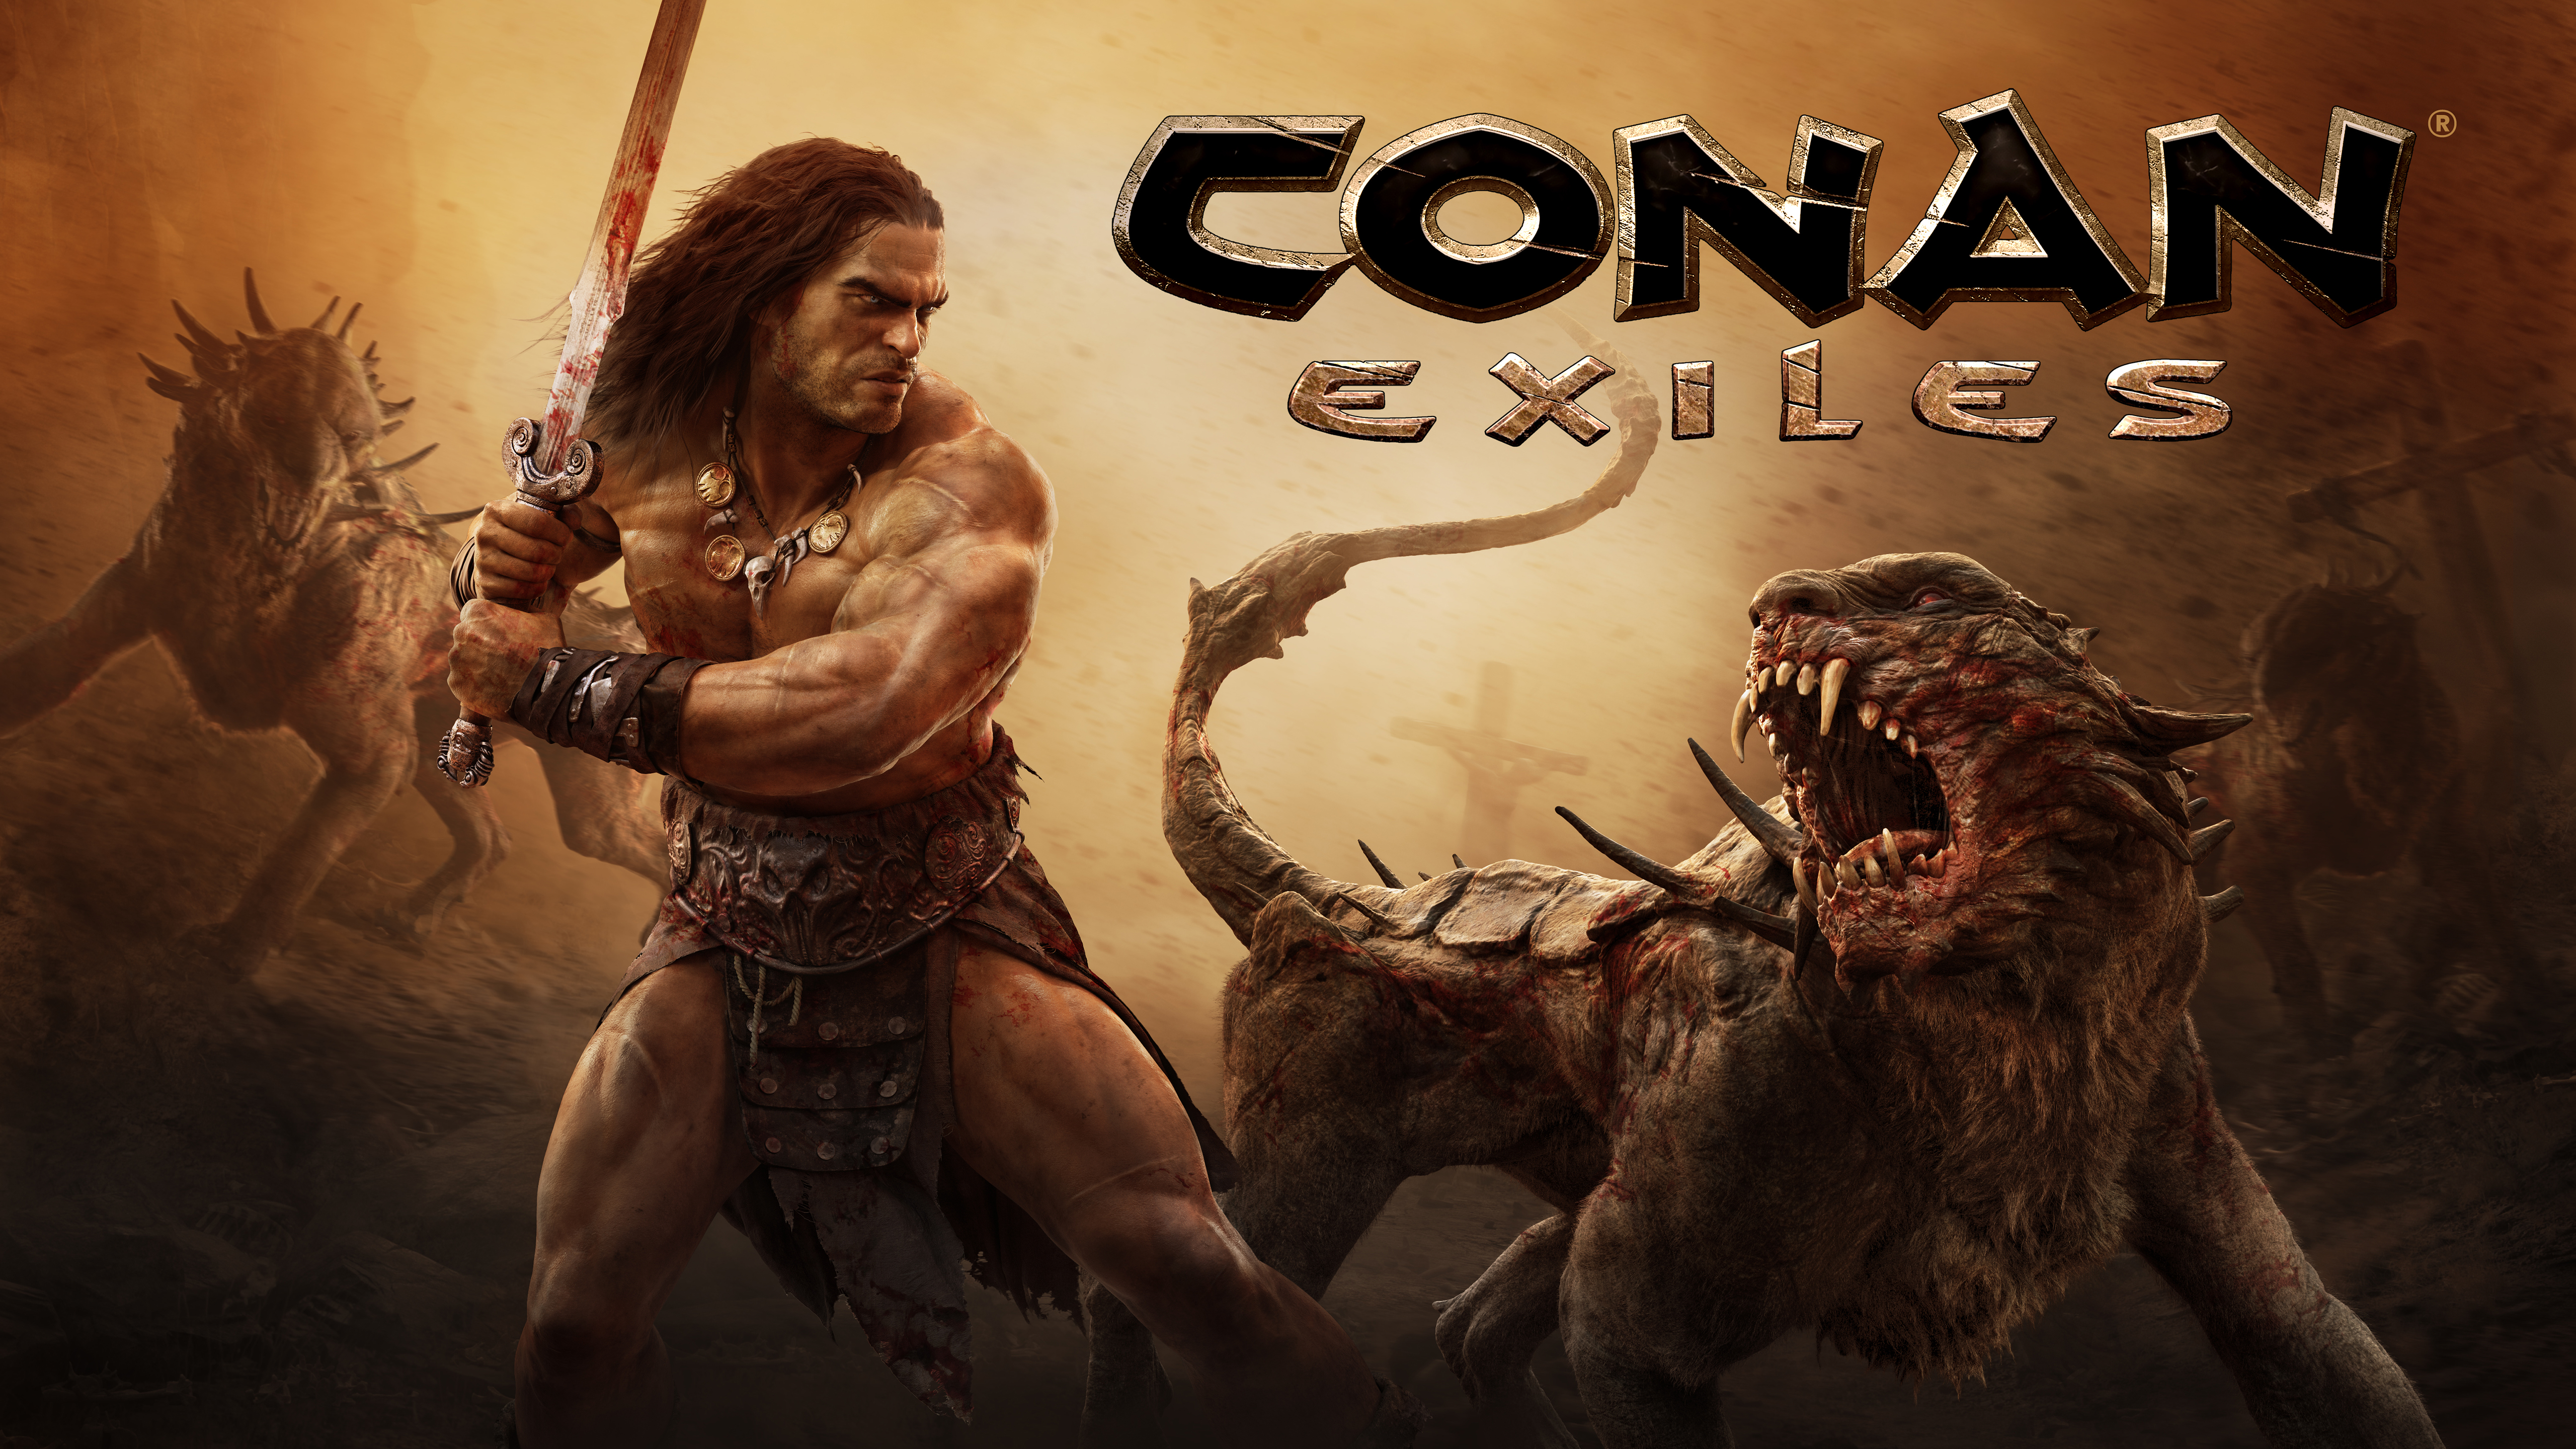 Conan Exiles 2018 Game 5K Wallpapers